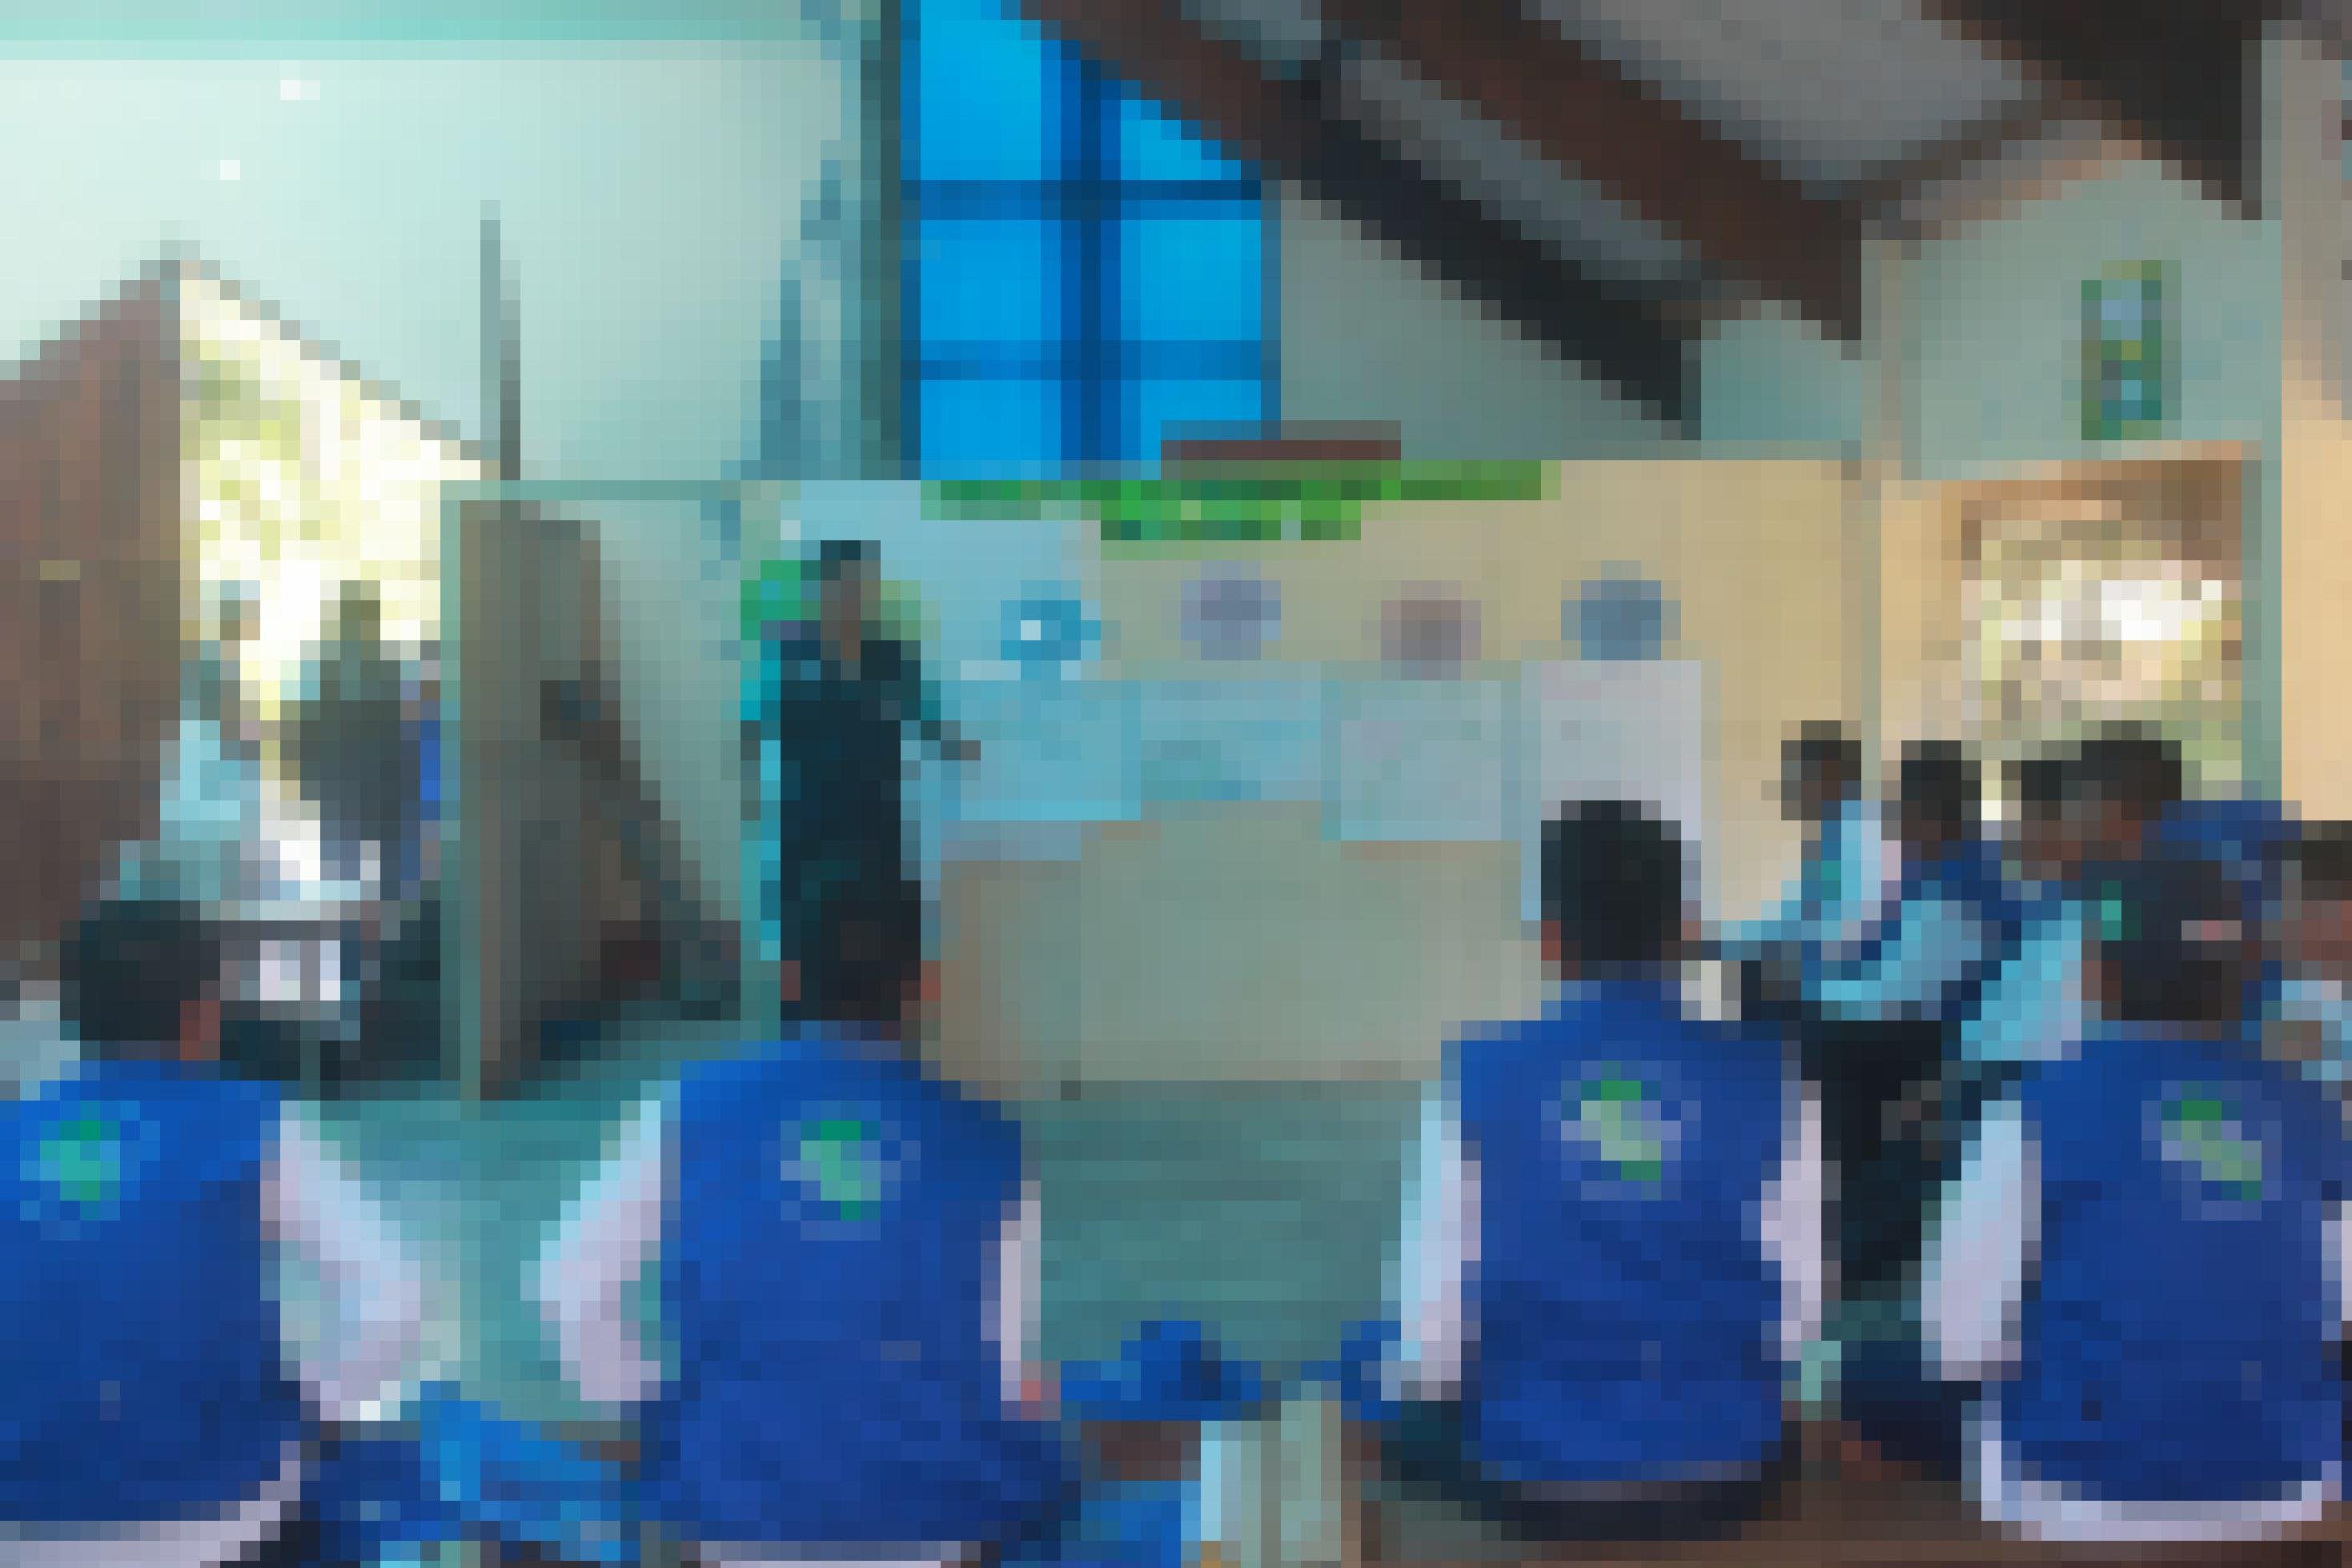 Eine Gruppe von rund 15 Männern in blauen Westen sitzen im Kreis und horchen einem jungen Mann zu, der an einem Wandbild erklärt, wie man Malariaprophylaxe betreibt.